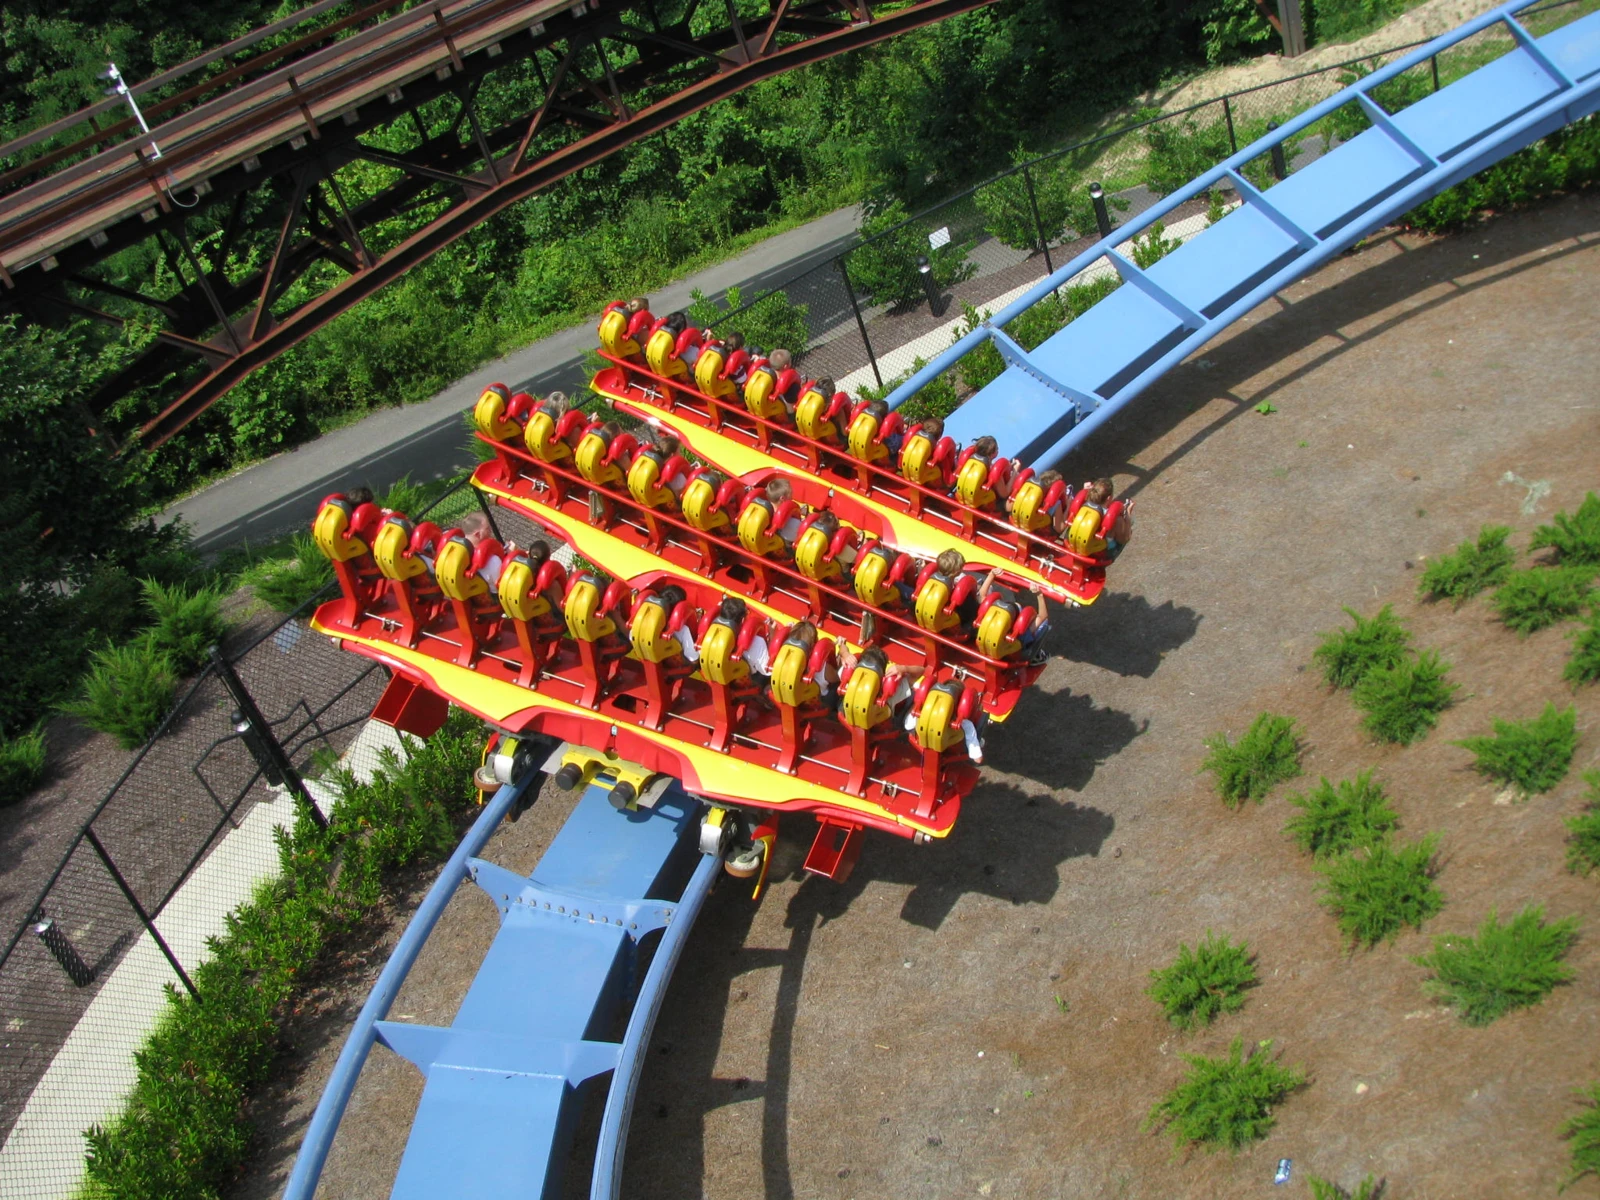 Best Thrill Rides & Roller Coasters at Busch Gardens - Virginia